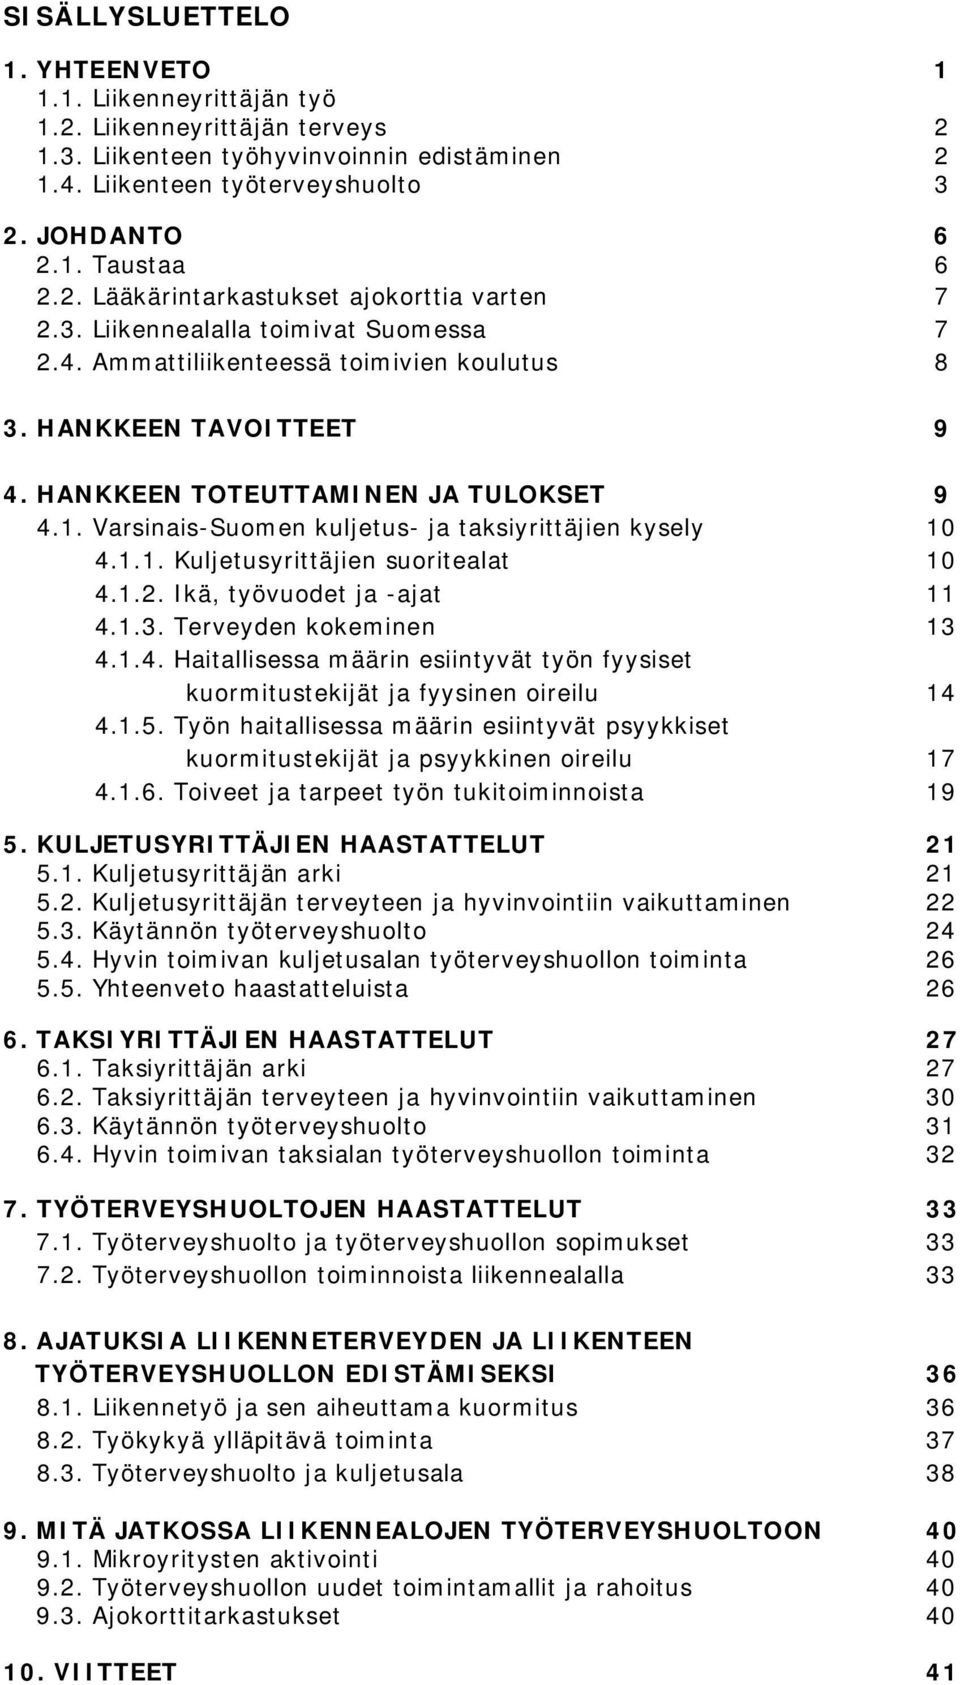 Varsinais-Suomen kuljetus- ja taksiyrittäjien kysely 10 4.1.1. Kuljetusyrittäjien suoritealat 10 4.1.2. Ikä, työvuodet ja -ajat 11 4.1.3. Terveyden kokeminen 13 4.1.4. Haitallisessa määrin esiintyvät työn fyysiset kuormitustekijät ja fyysinen oireilu 14 4.